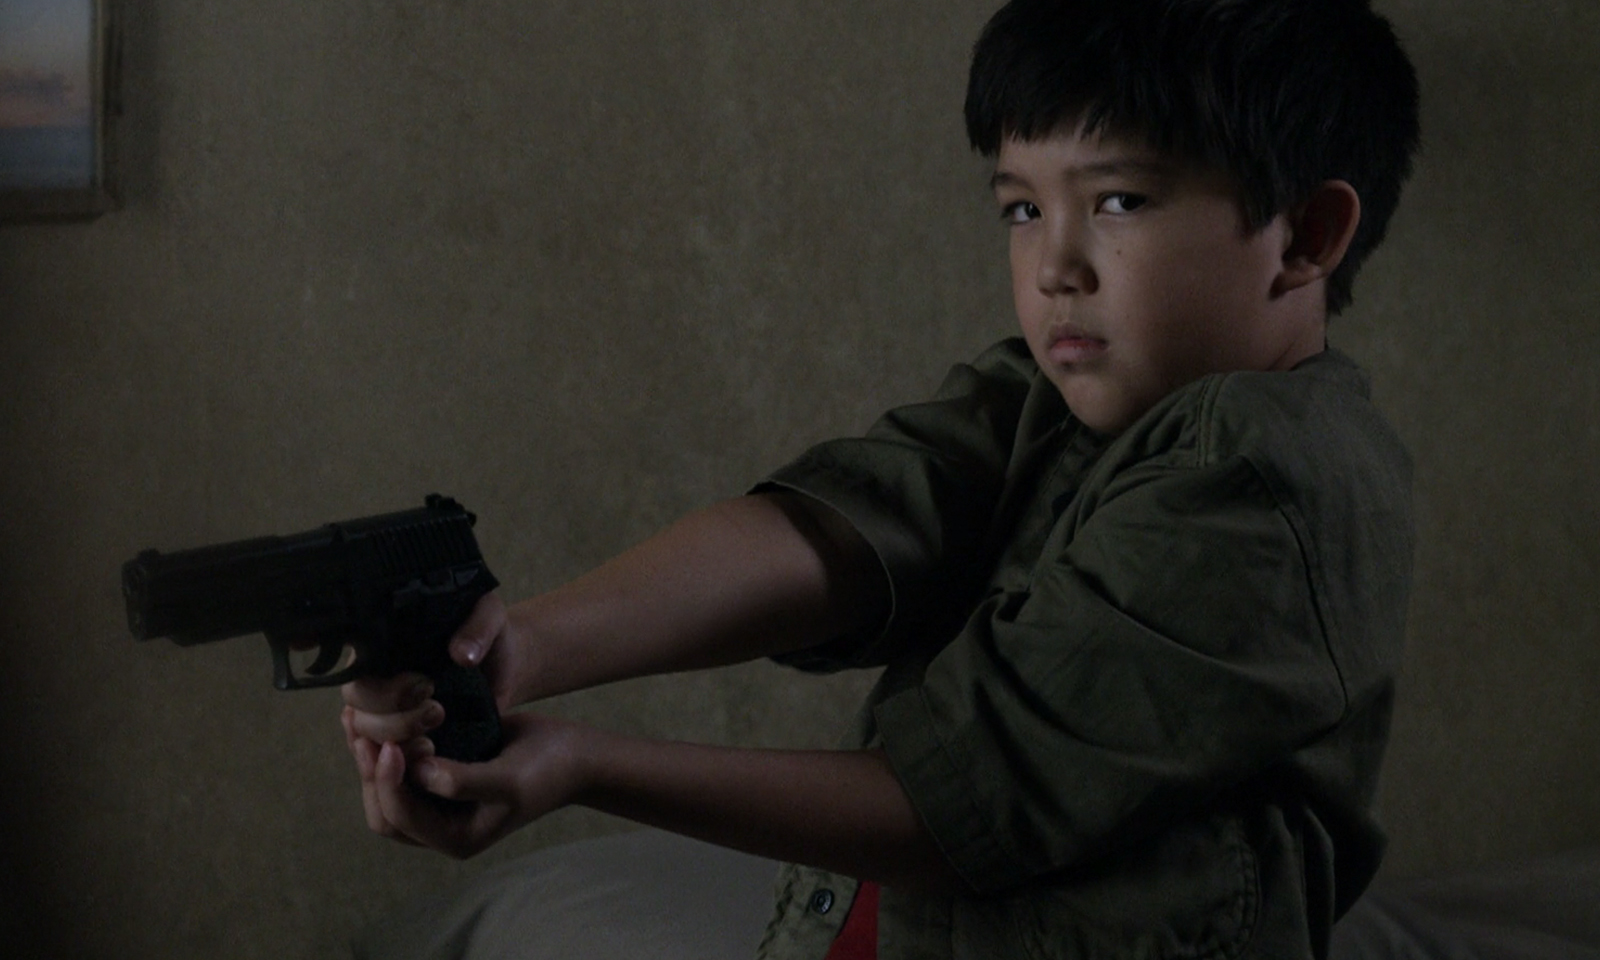 Hershel segurando uma arma em cena do episódio 14 da 11ª temporada de The Walking Dead.